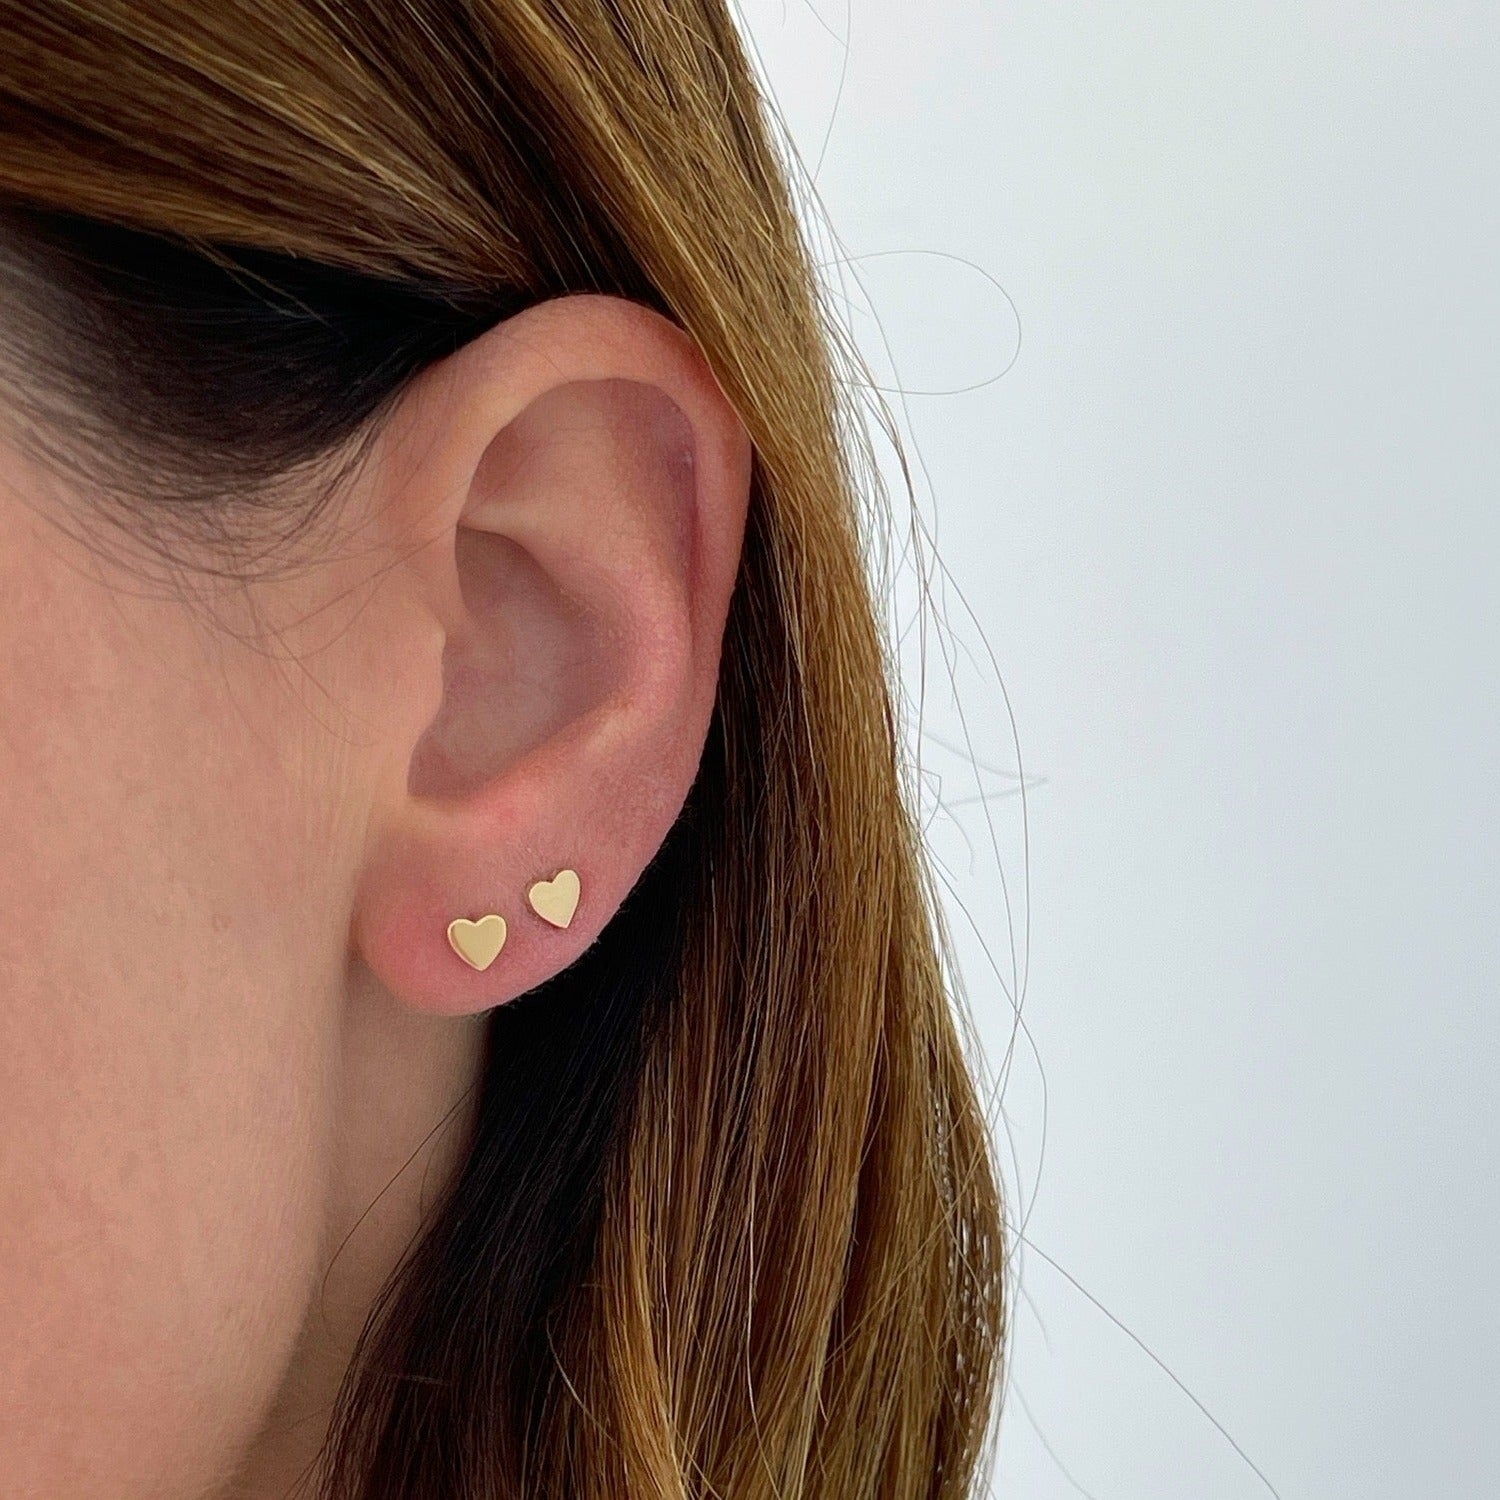 Gold Baby Heart Stud Earrings in 14k yellow gold styled on ear lobe on ear of model